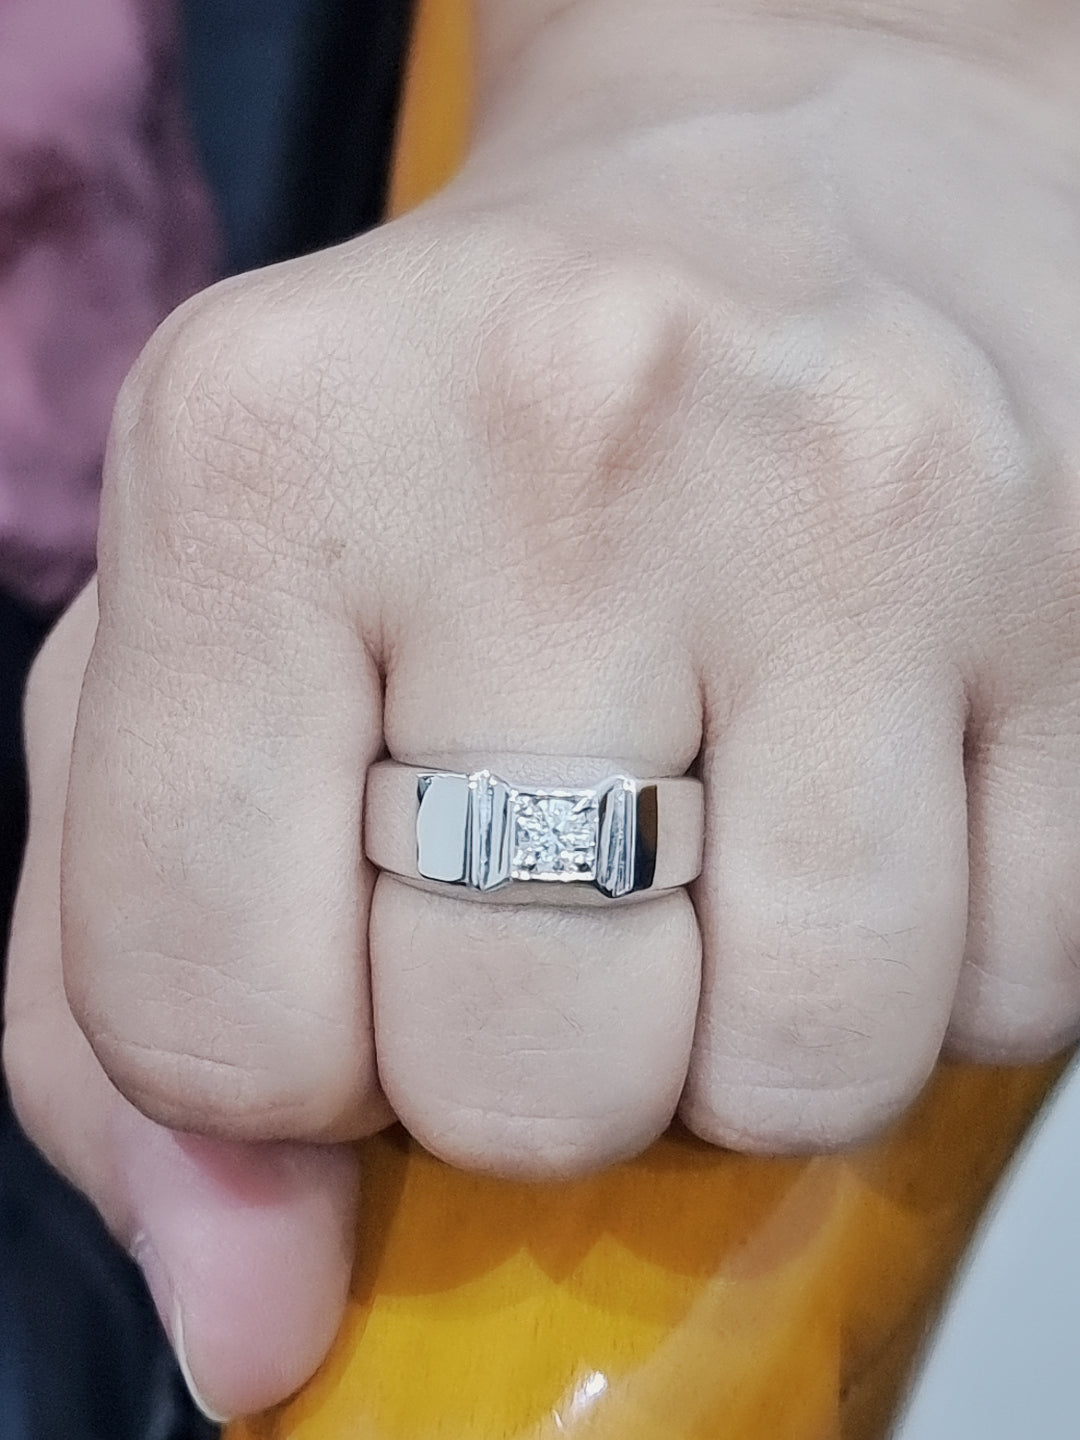 Solitaire Diamond Ring For Men In 18k White Gold